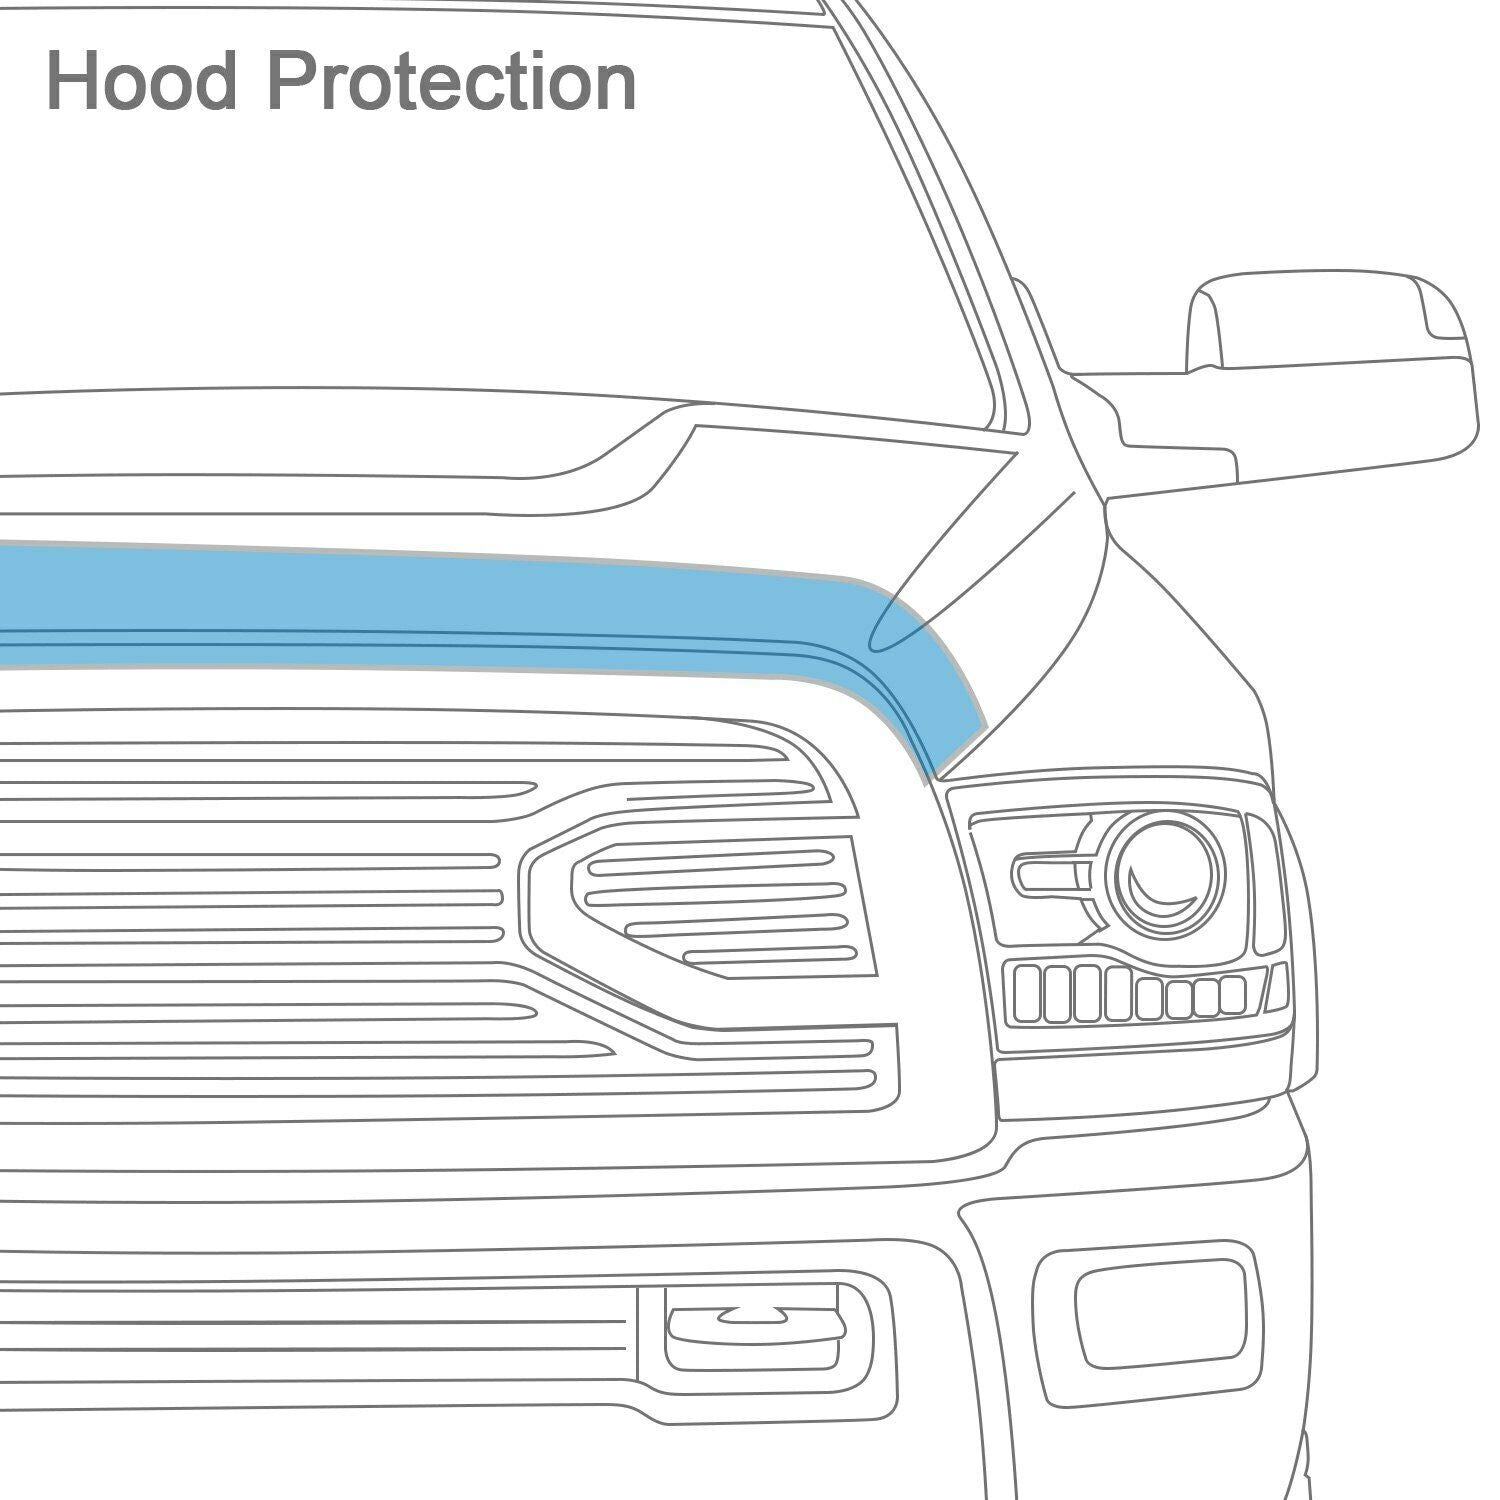 AVS Bugflector Smok Hood Protector Shield For 94-01 Dodge Ram 1500 to 3500 23148